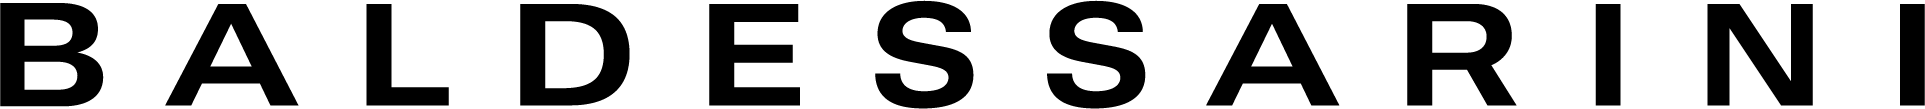 BALDESSARIN Logo